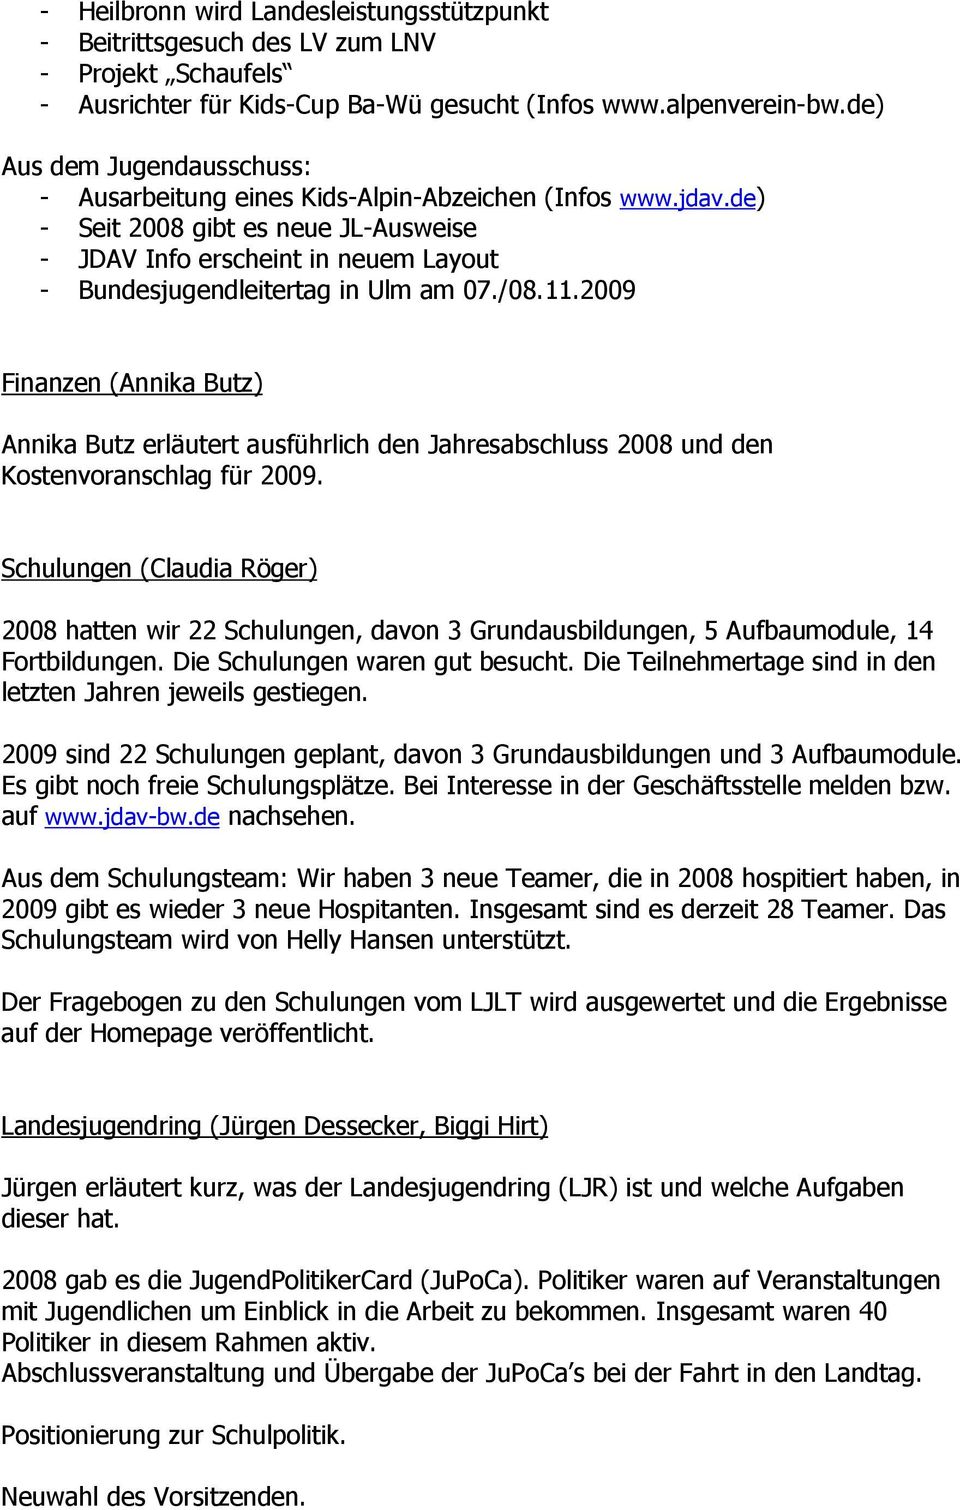 de) - Seit 2008 gibt es neue JL-Ausweise - JDAV Info erscheint in neuem Layout - Bundesjugendleitertag in Ulm am 07./08.11.